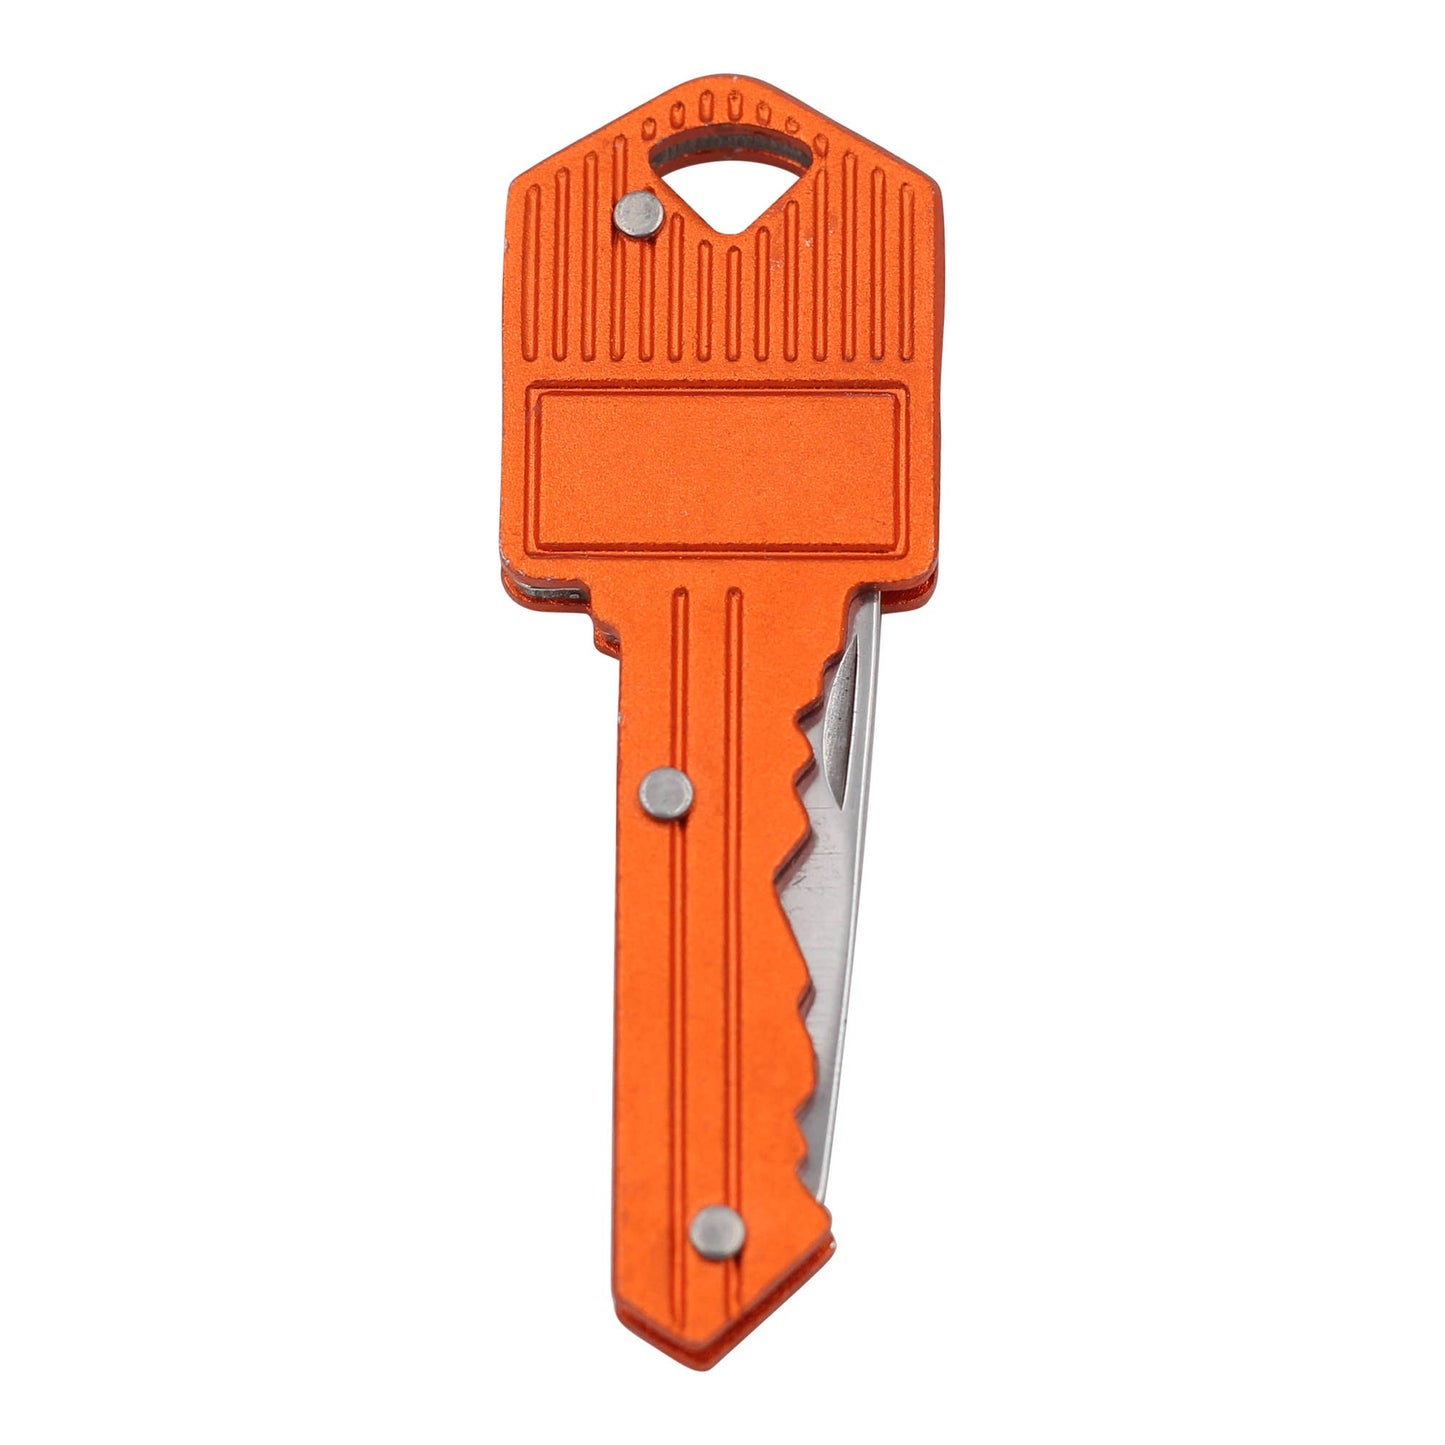 Image of Real Sic Orange Key Knife Keychain – Small Utility Pocketknife - 2'' Blade